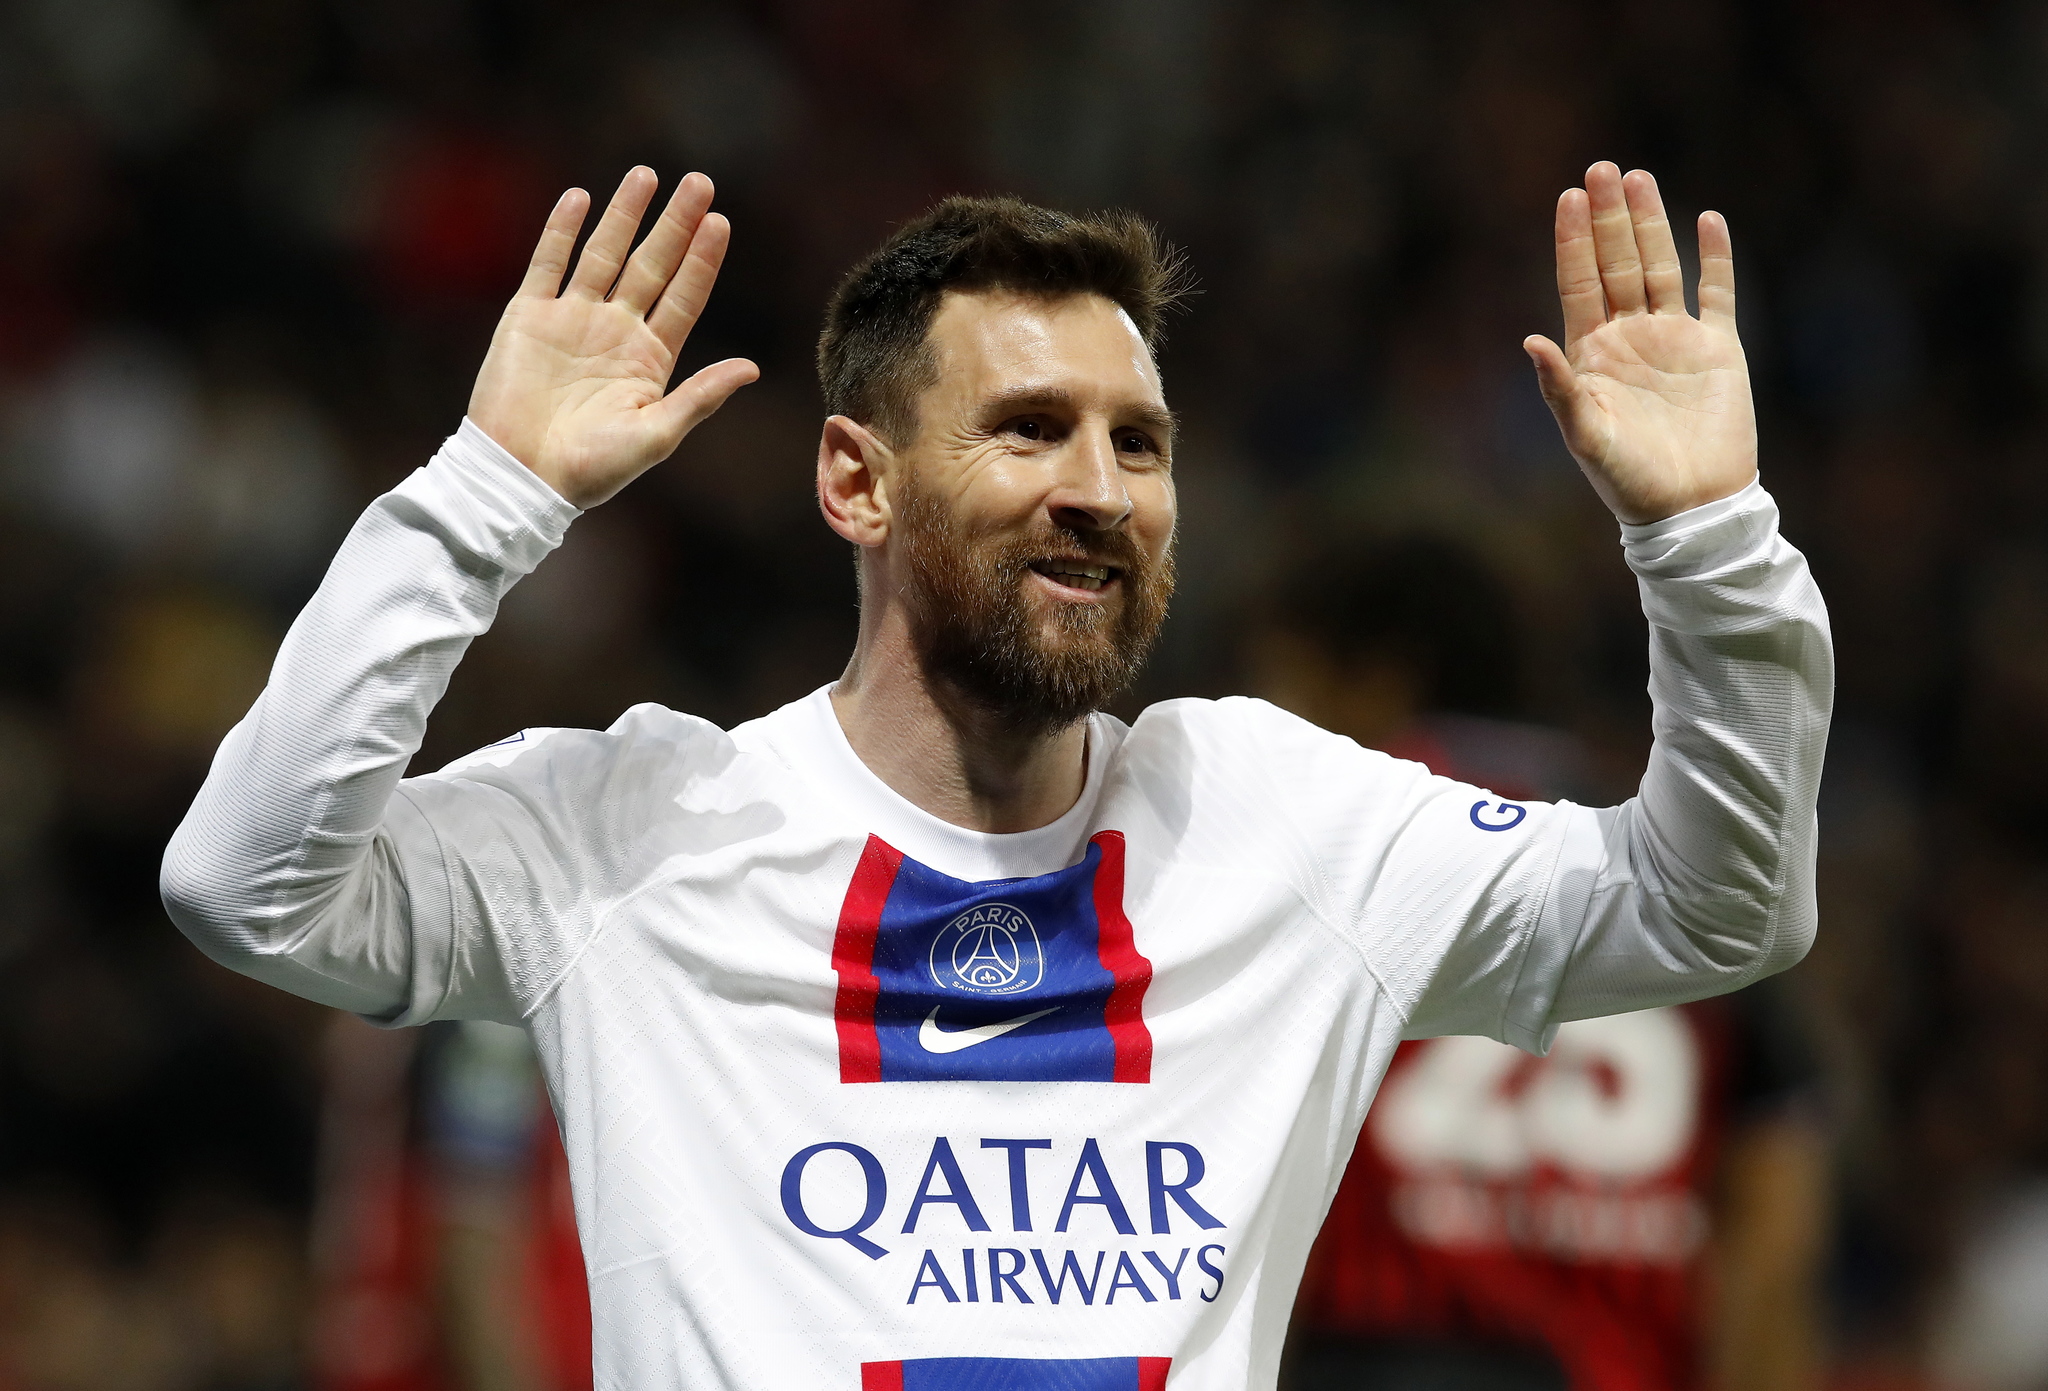 El Barcelona activar su ingeniera financiera para 'atar' a Messi